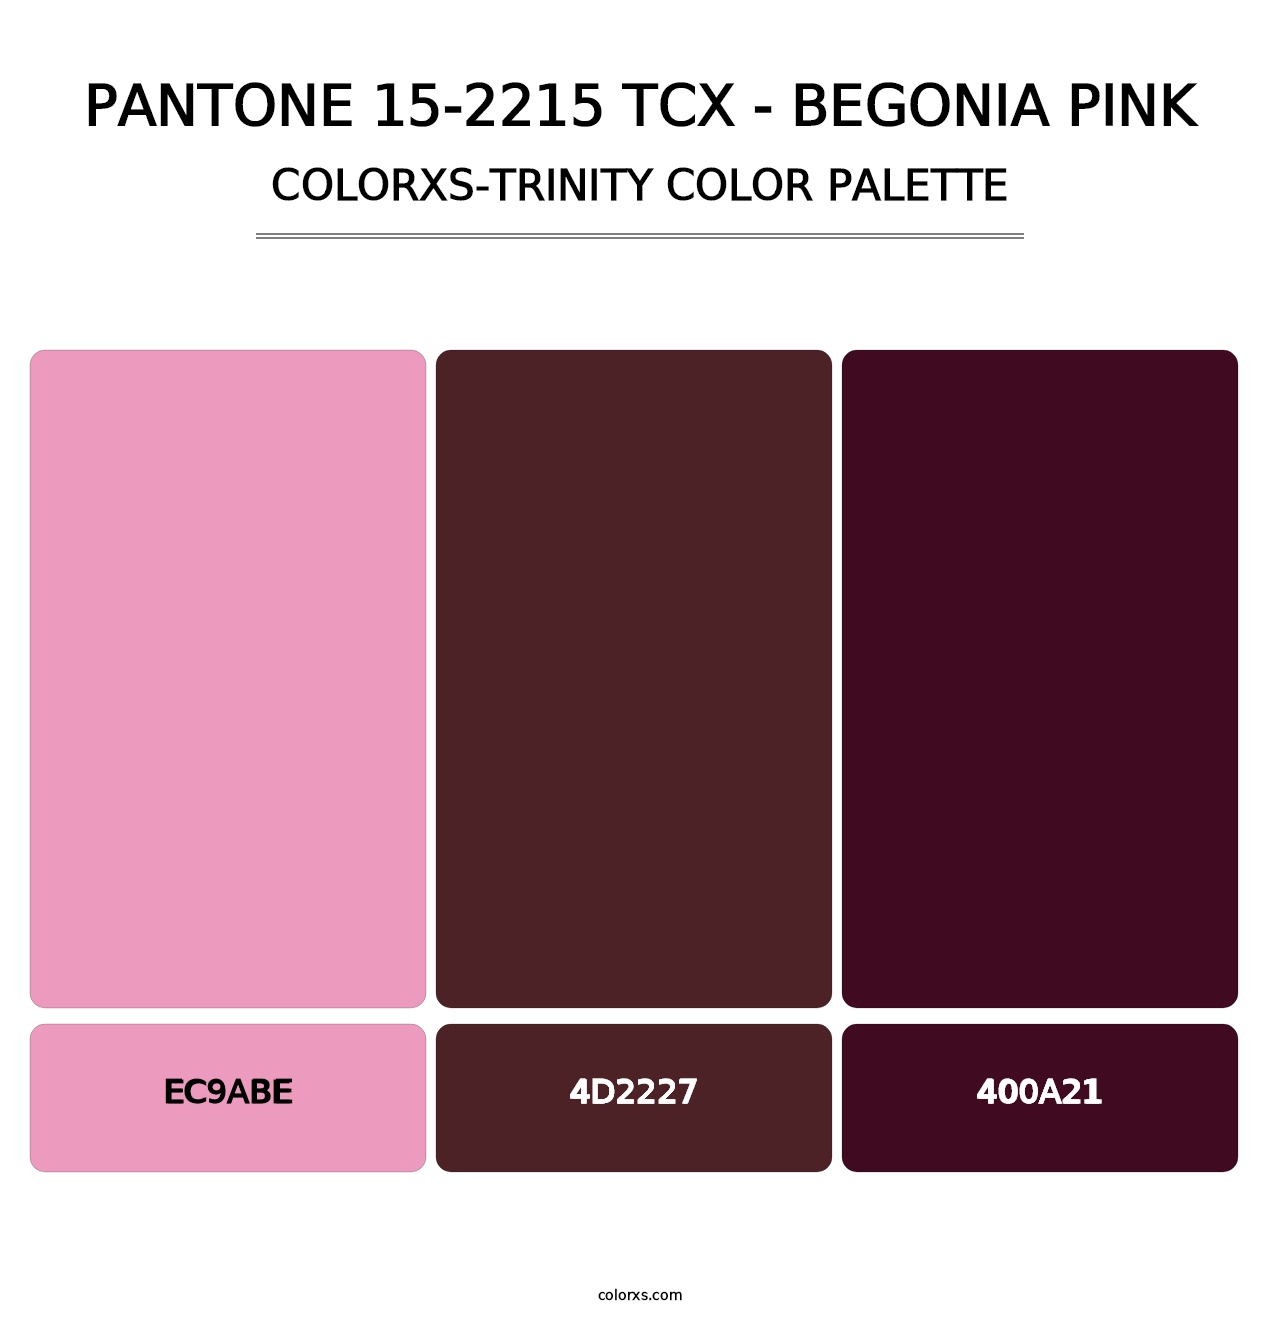 PANTONE 15-2215 TCX - Begonia Pink - Colorxs Trinity Palette